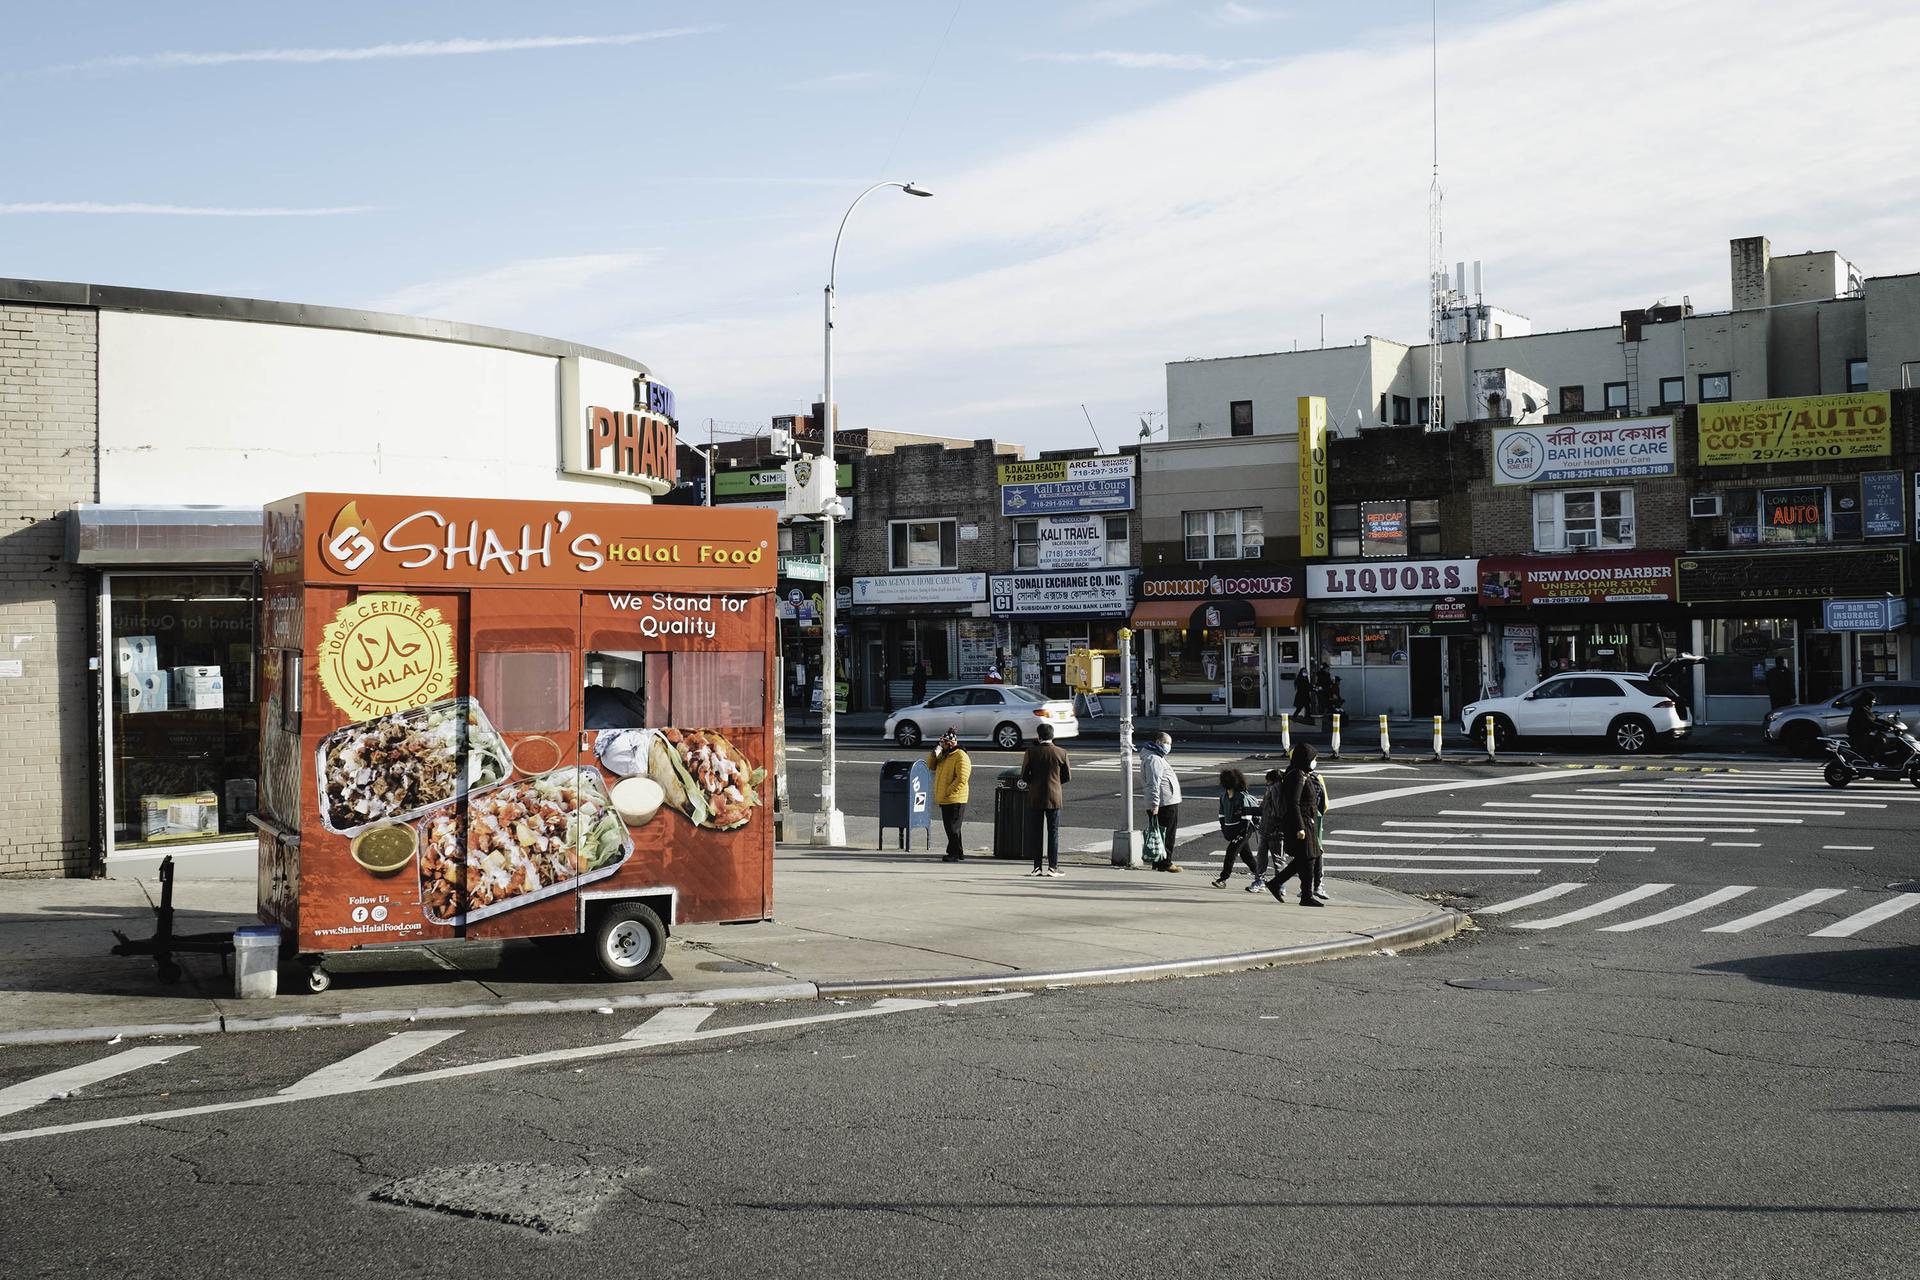 Shah's food truck in Jamaica, Queens